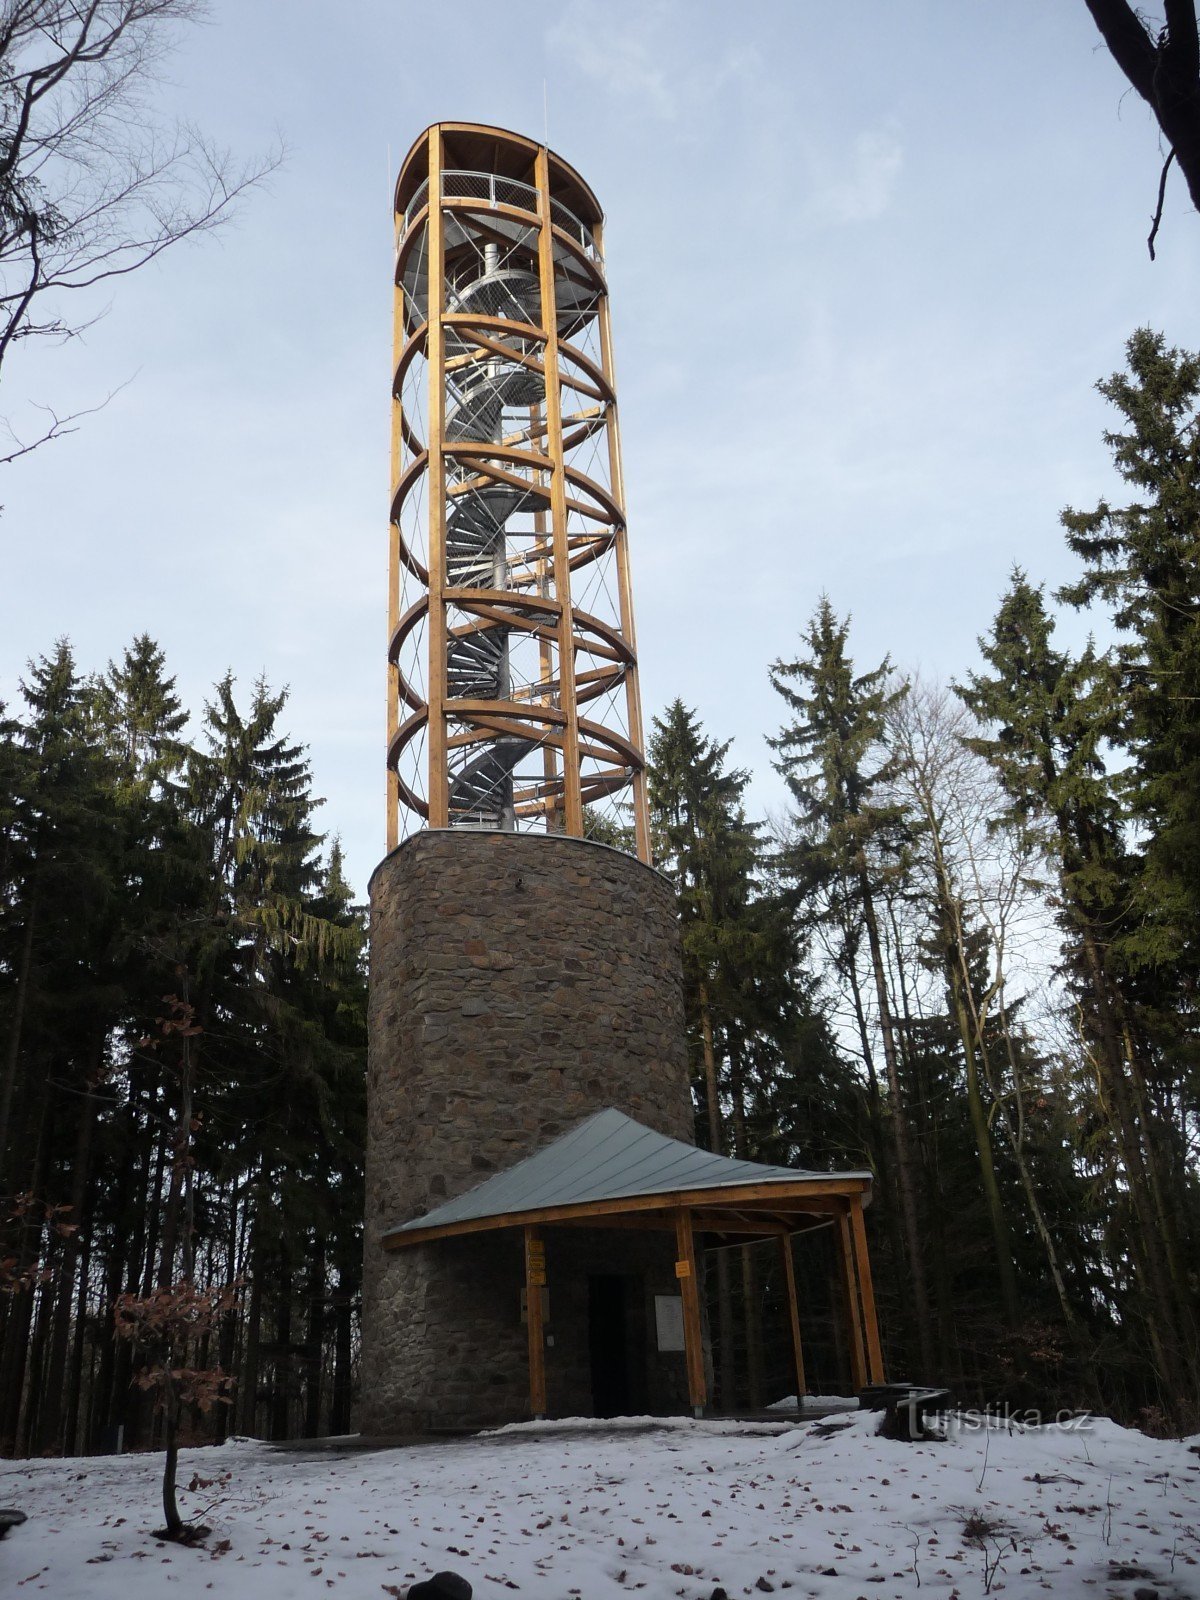 Mařenka lookout tower in winter